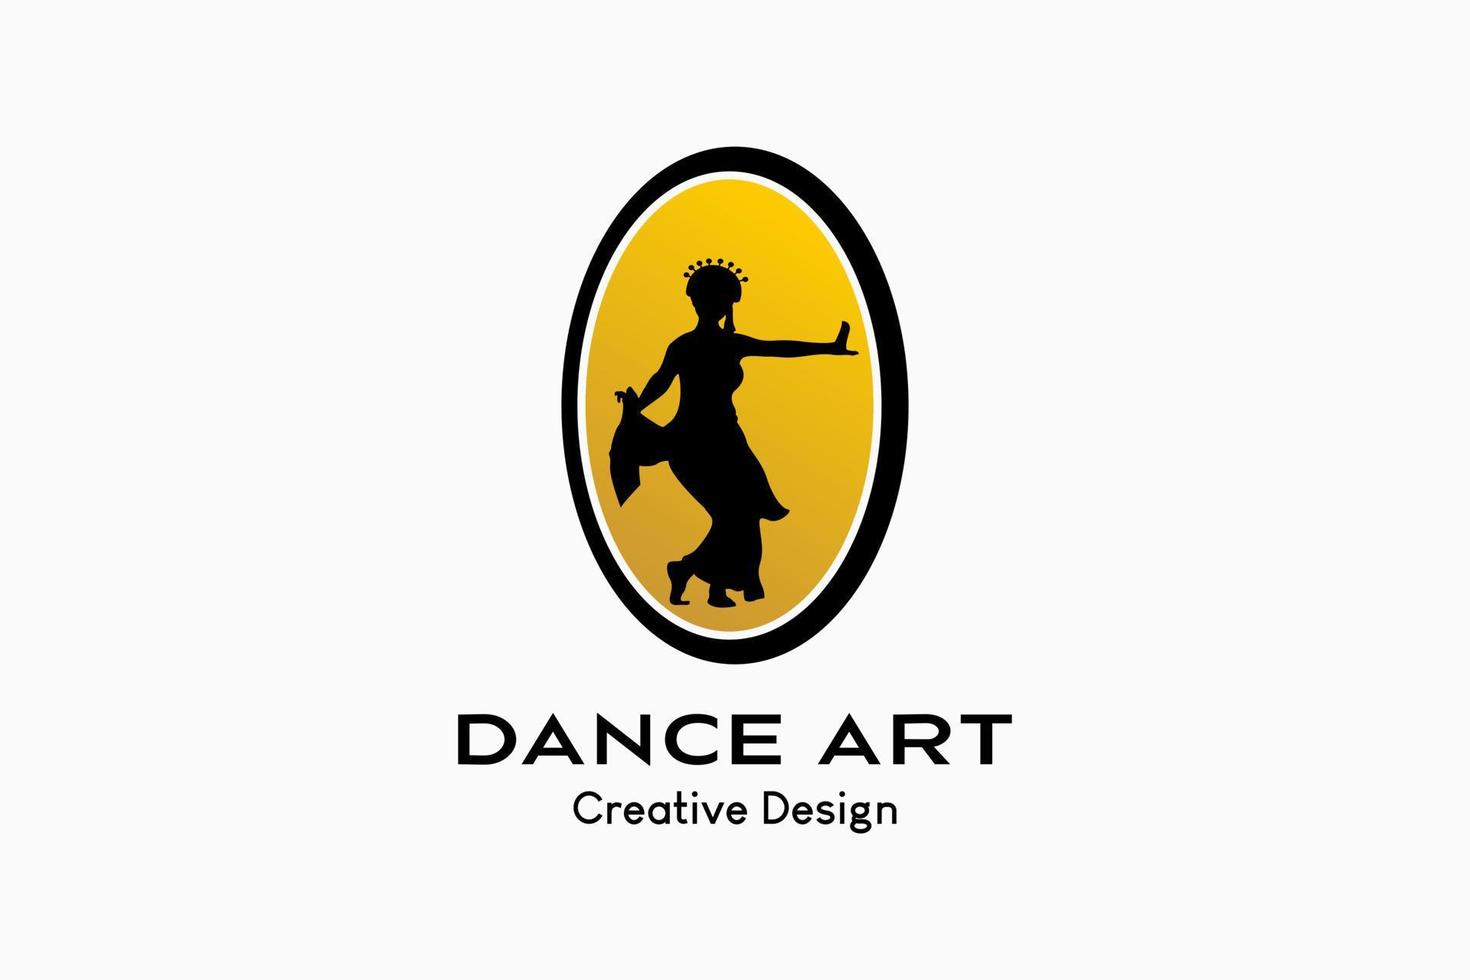 création de logo de danse traditionnelle avec silhouette de personnes dansant en ovale. prime de vecteur